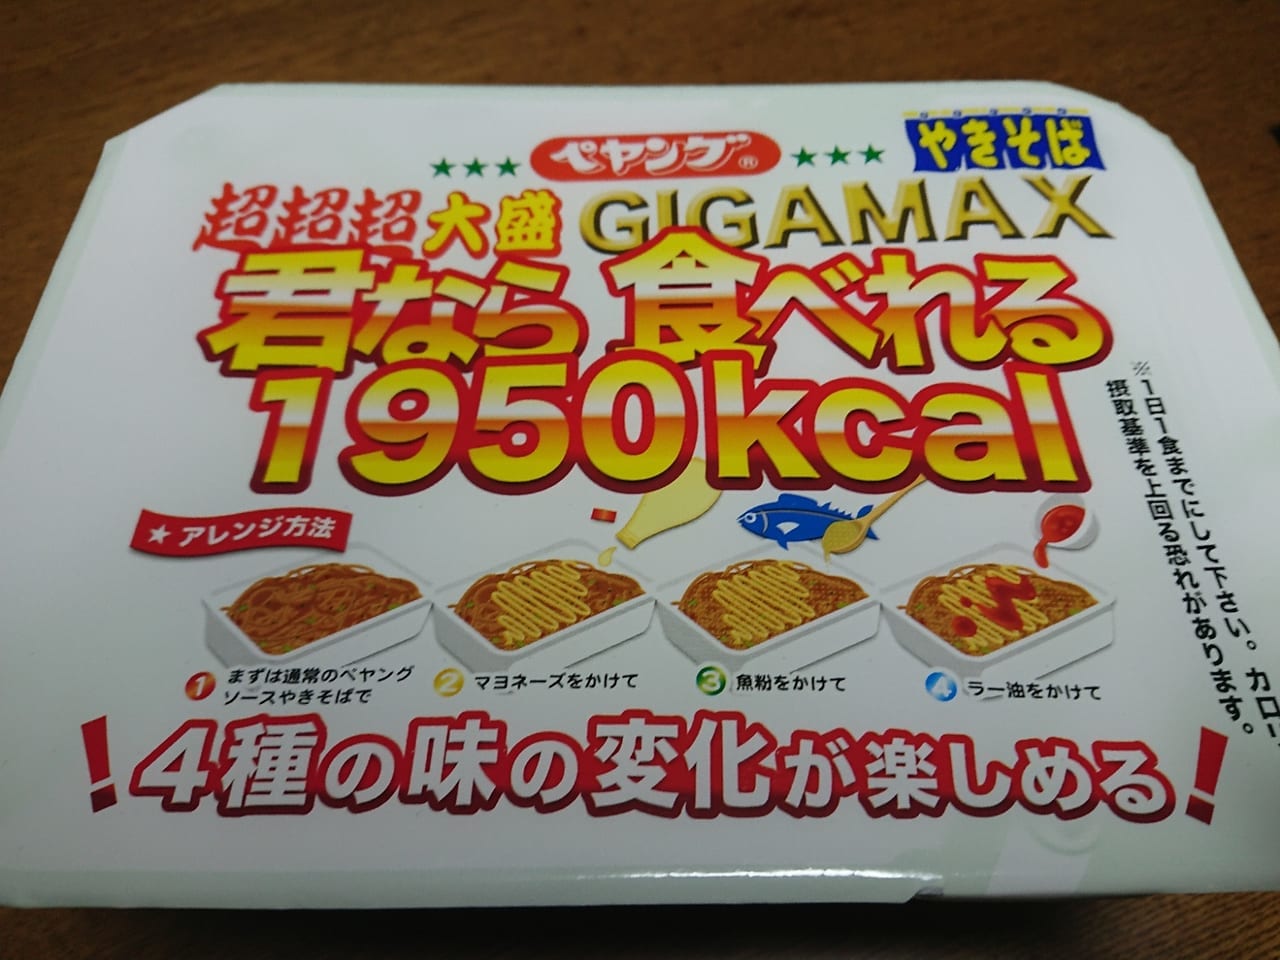 まるか食品のペヤング超超超大盛やきそばGIGAMAX君なら食べれるの新発売のお知らせ